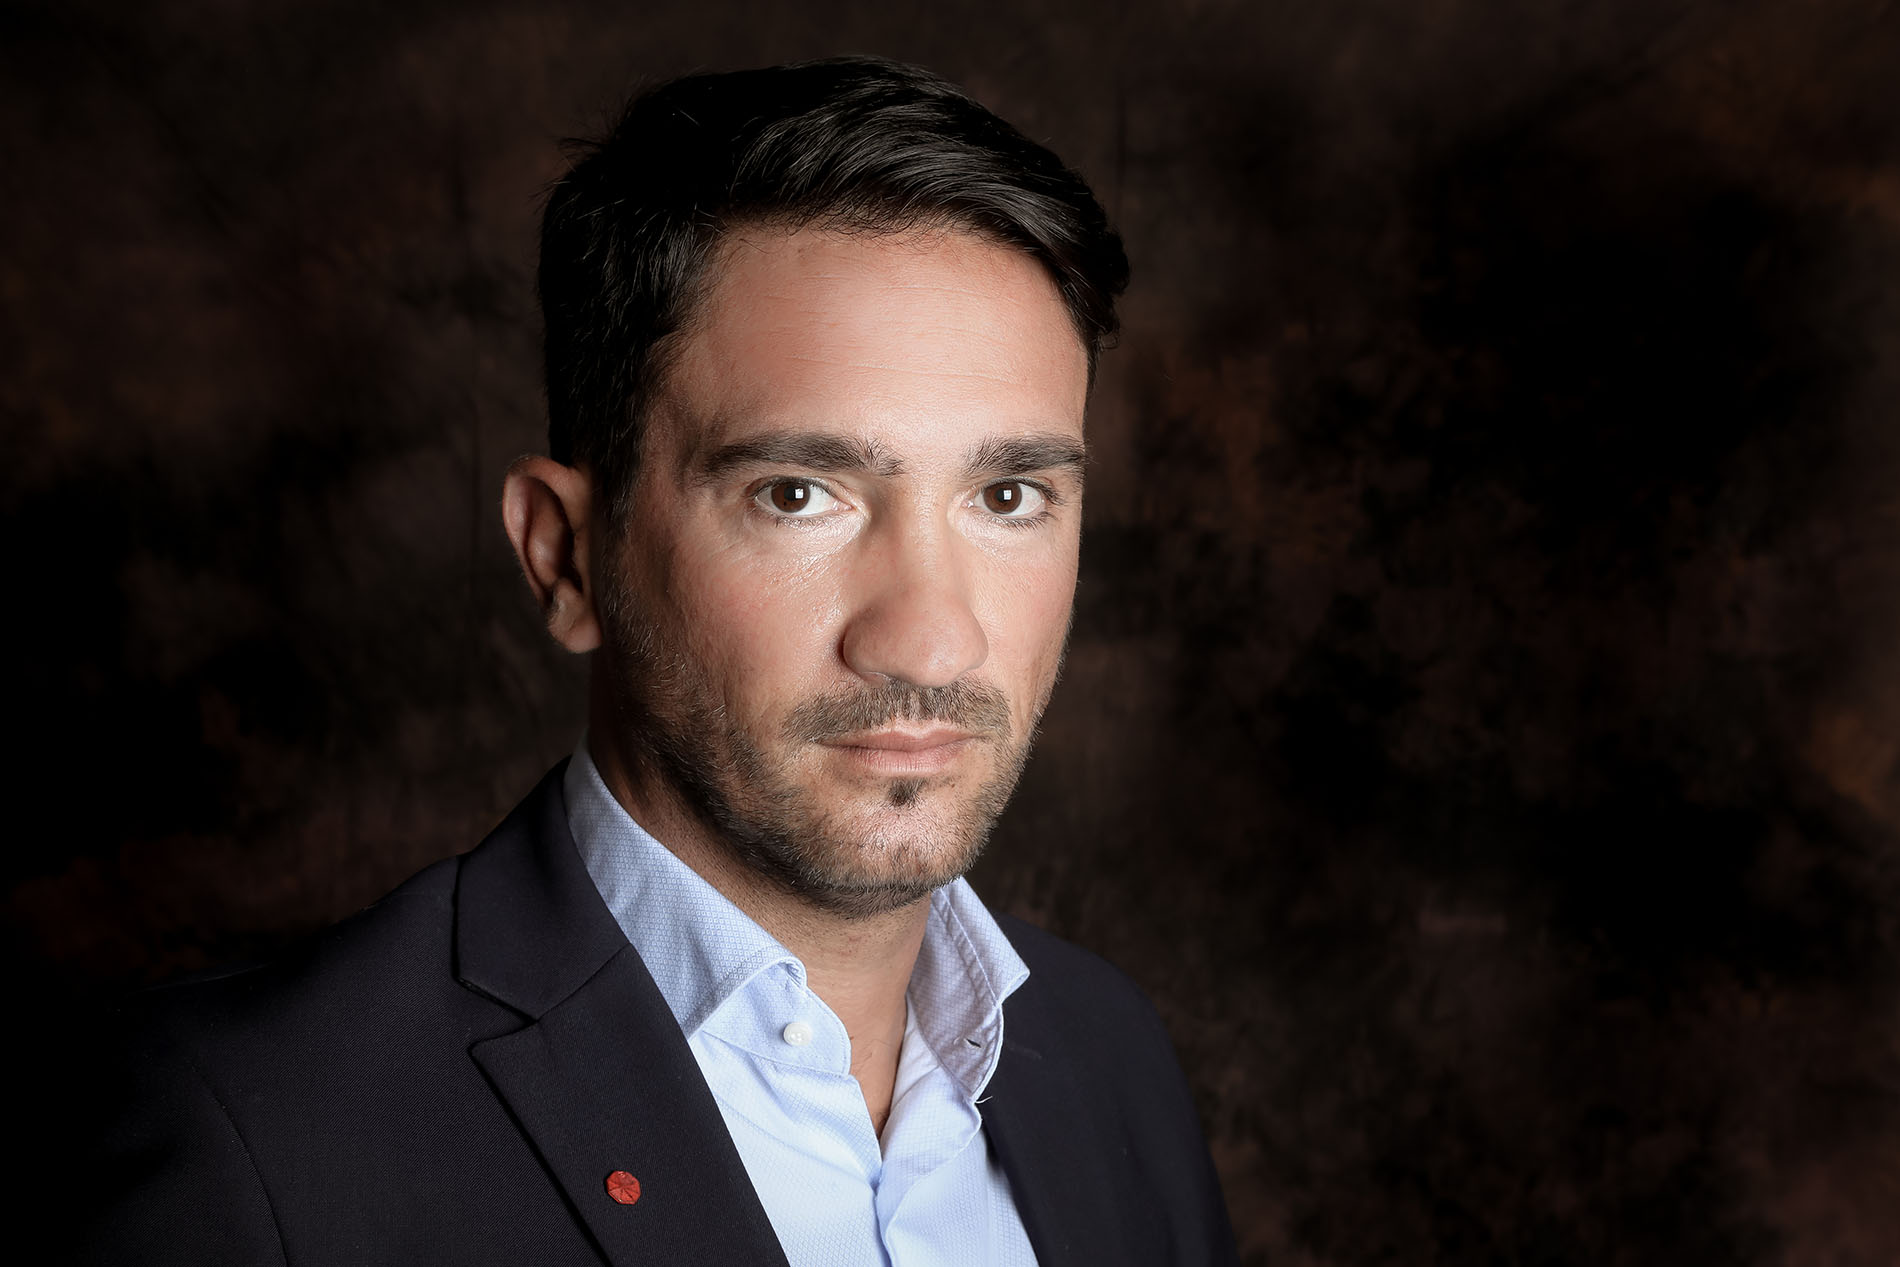 Nicola Gentile consigliere comunale di Marciano della Chiana candidato “Civico” nelle liste di Forza Italia in Regione